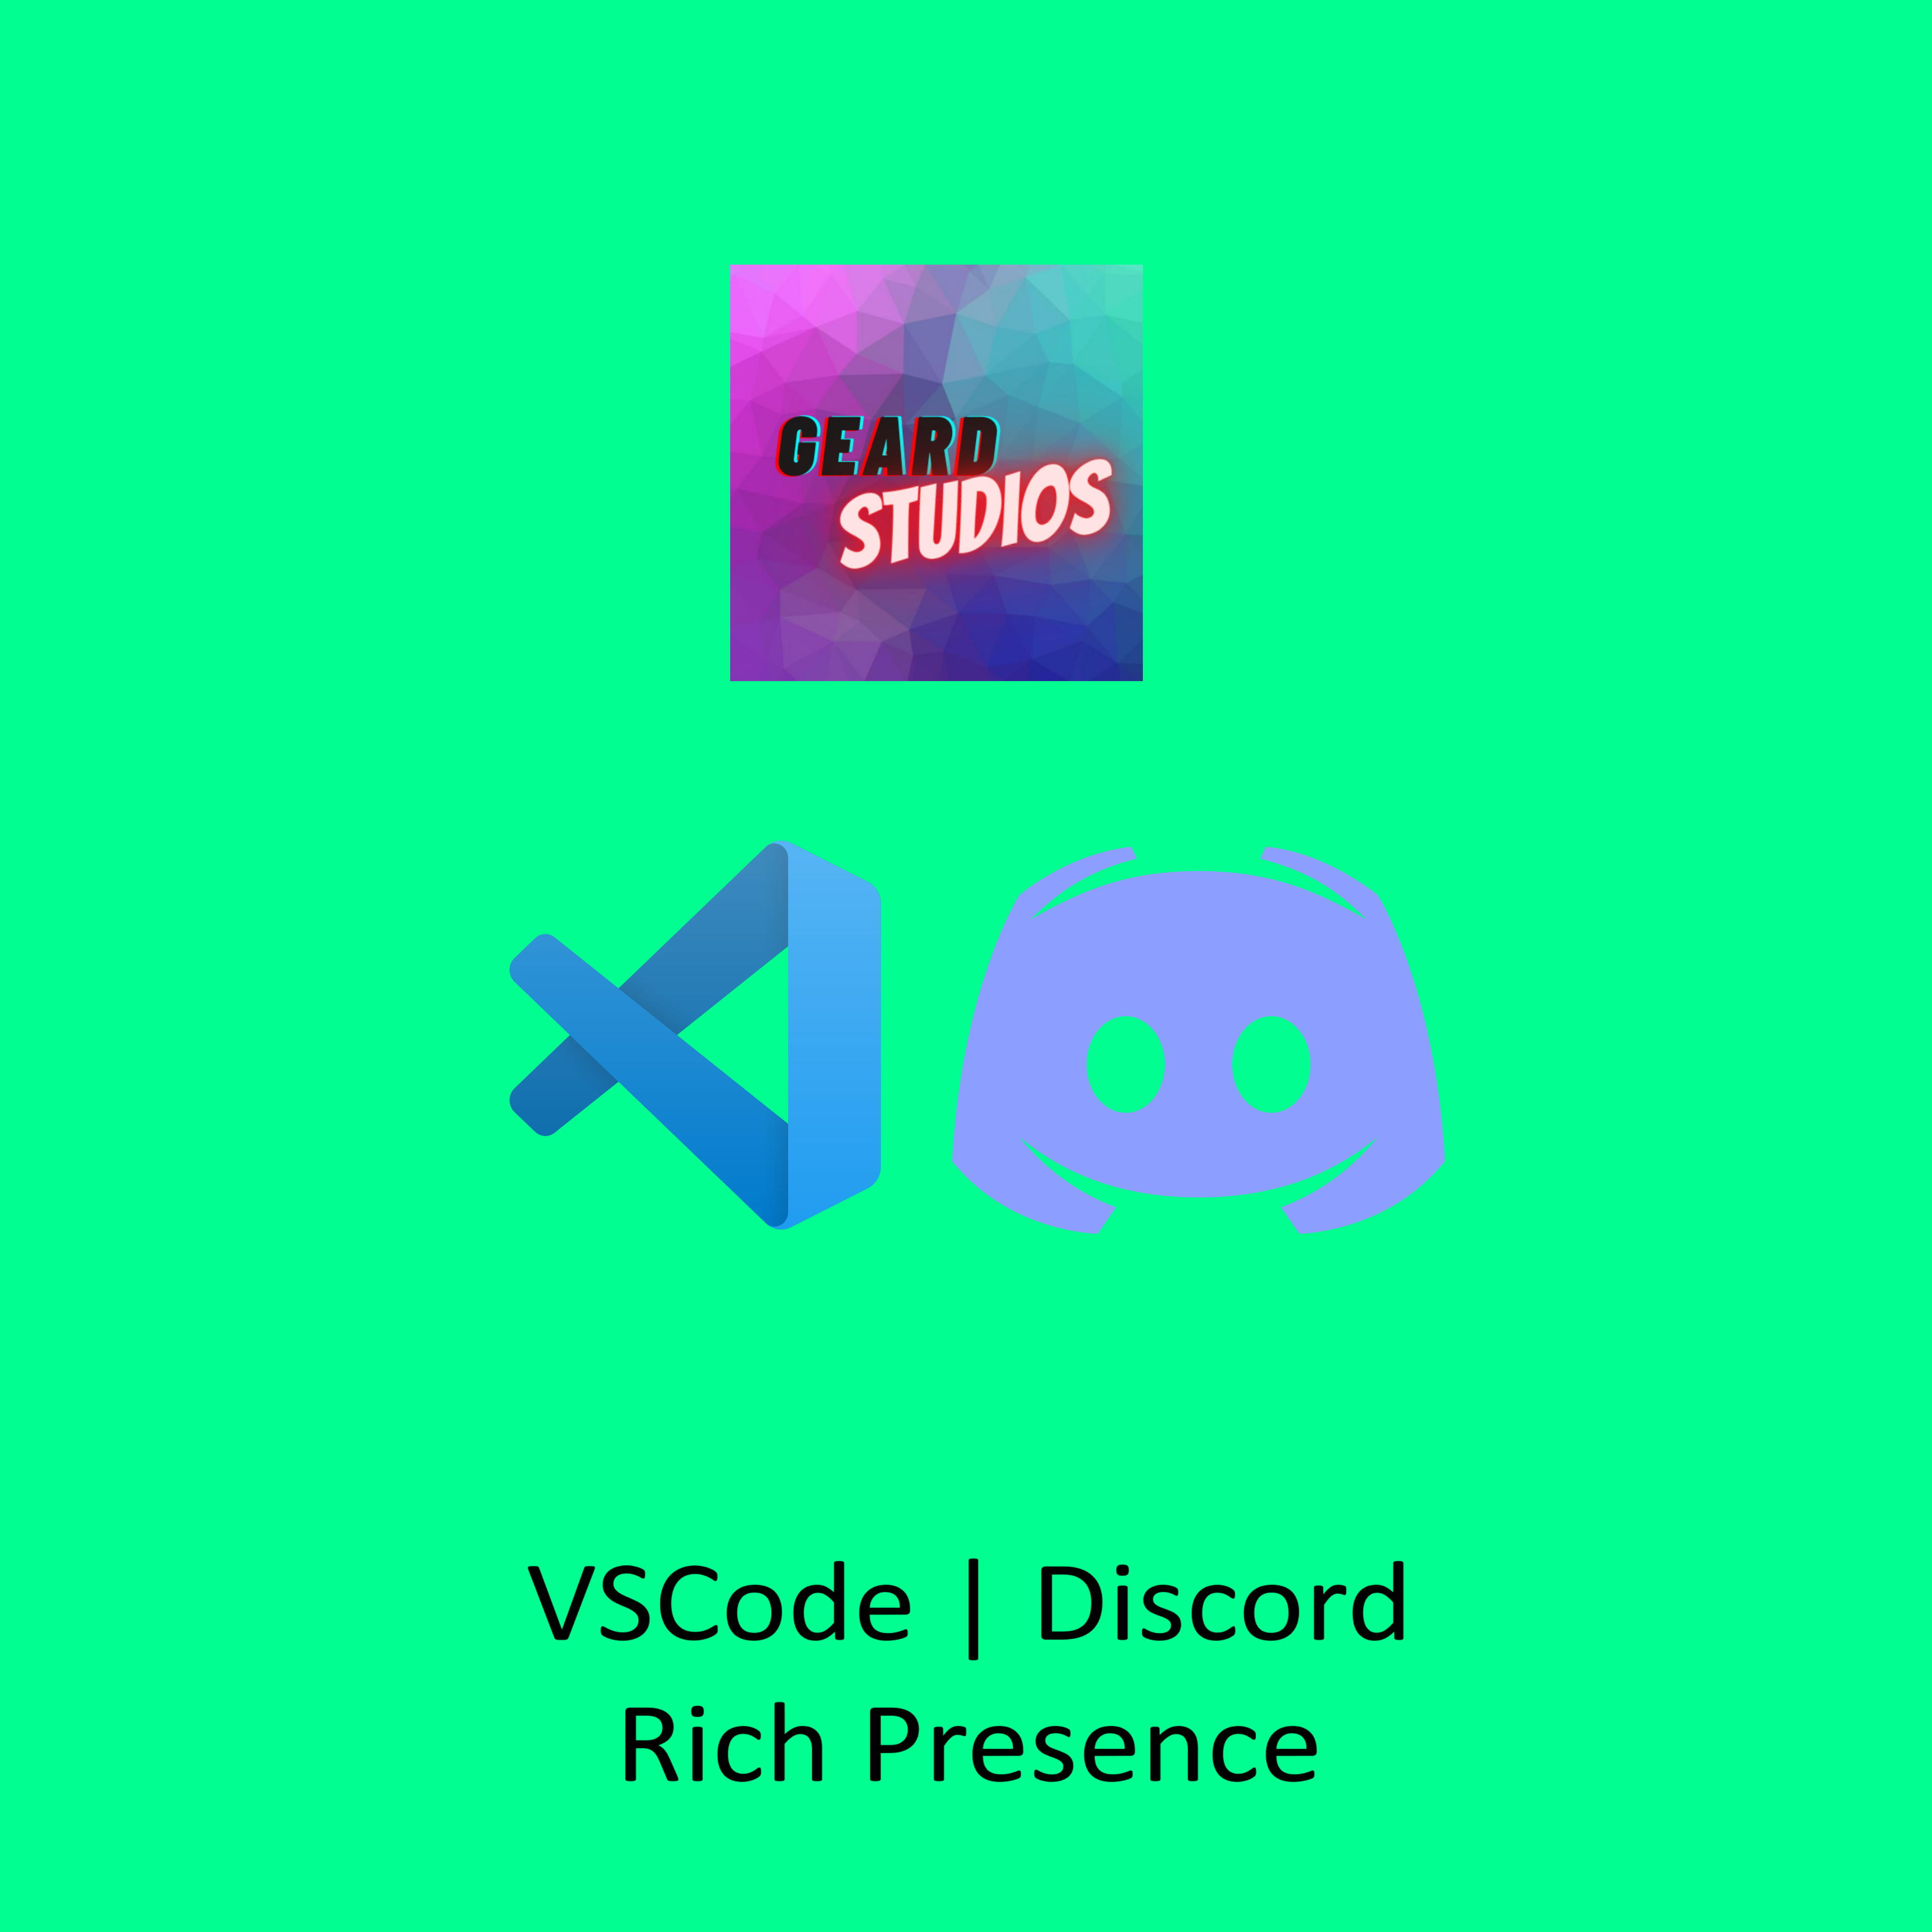 VSCode Discord Rich Presence - Visual Studio Marketplace